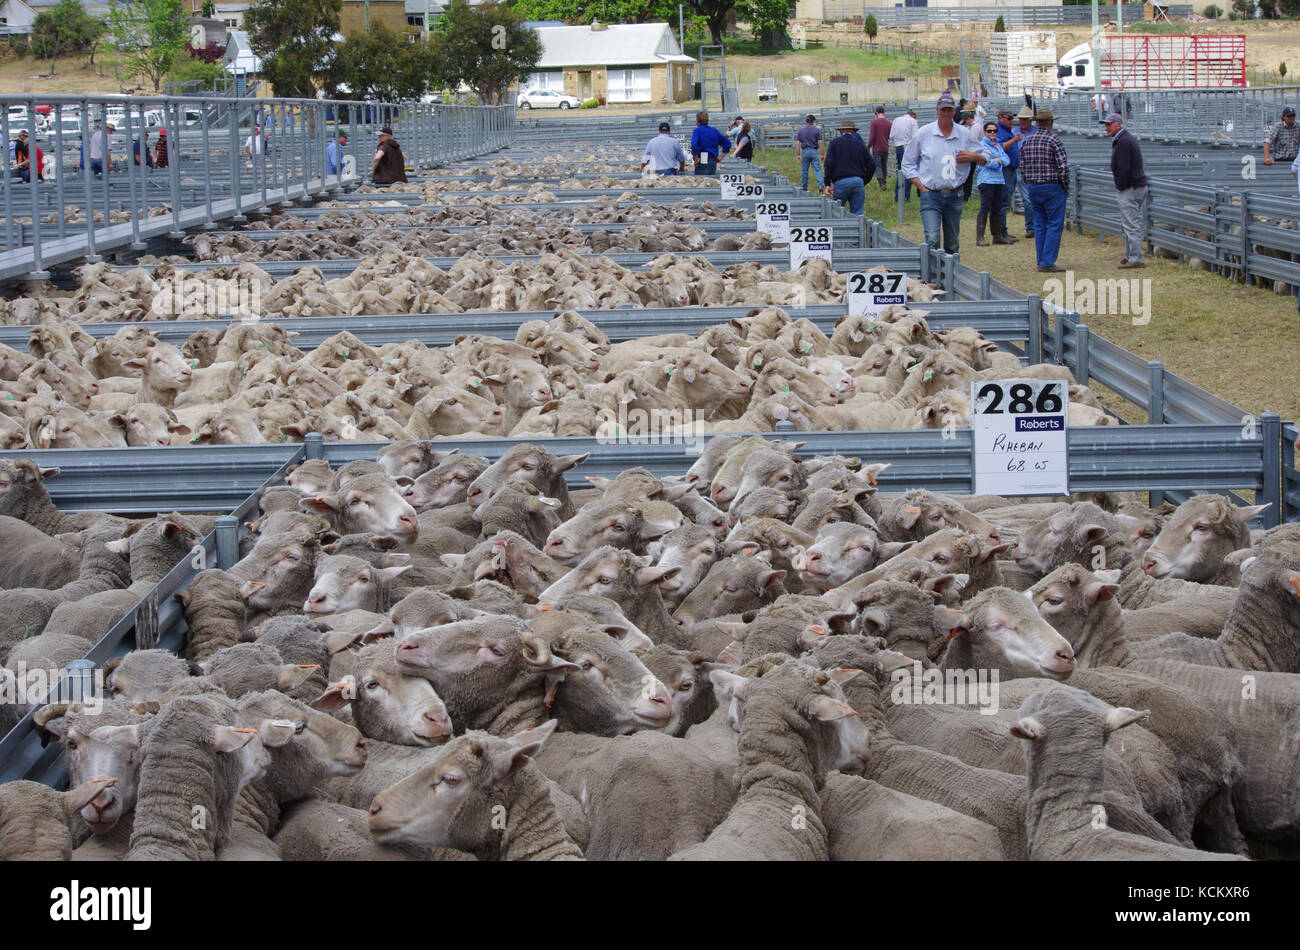 Moutons en plumes à saleyard avec des acheteurs potentiels. Oatlands, Southern Midlands, Tasmanie, Australie Banque D'Images